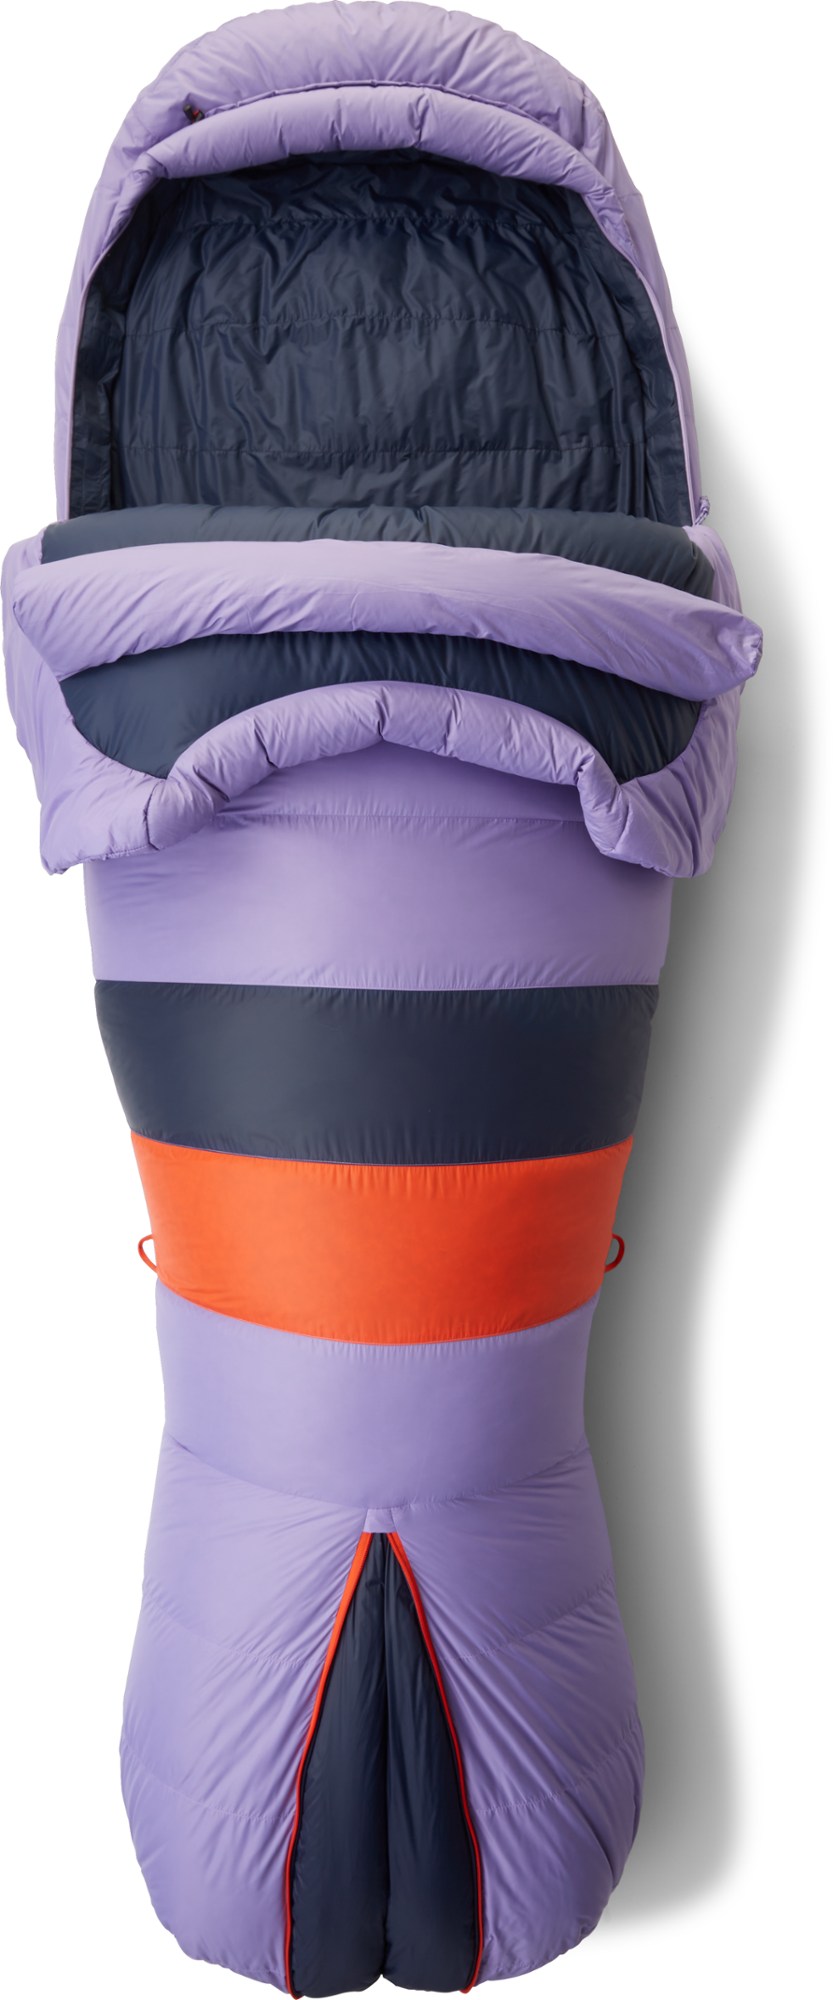 Спальный мешок Teton 15 — женский Marmot, фиолетовый